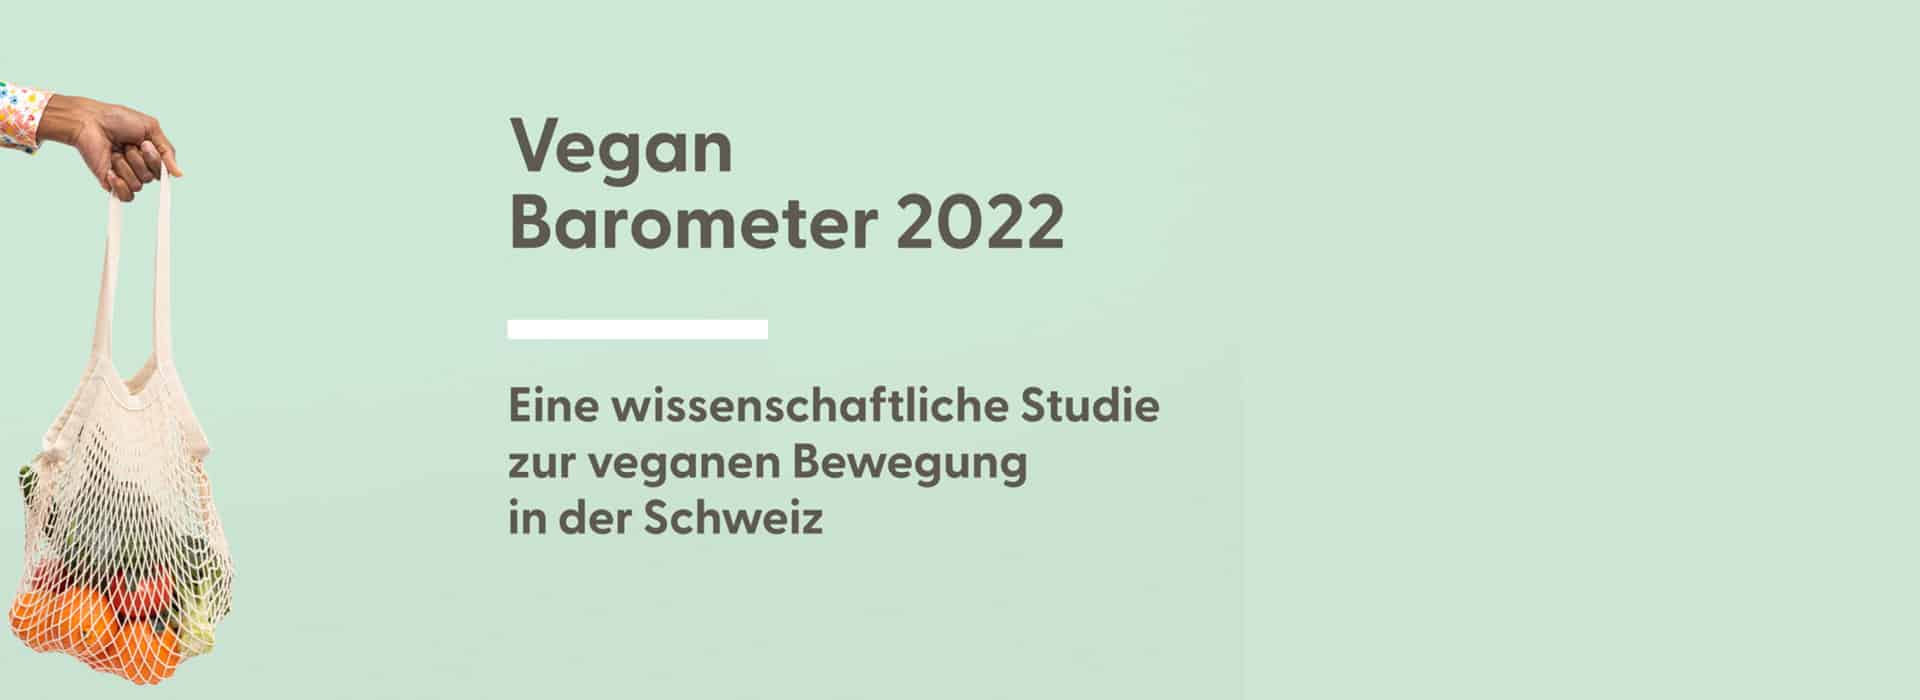 Vegan Barometer 2022